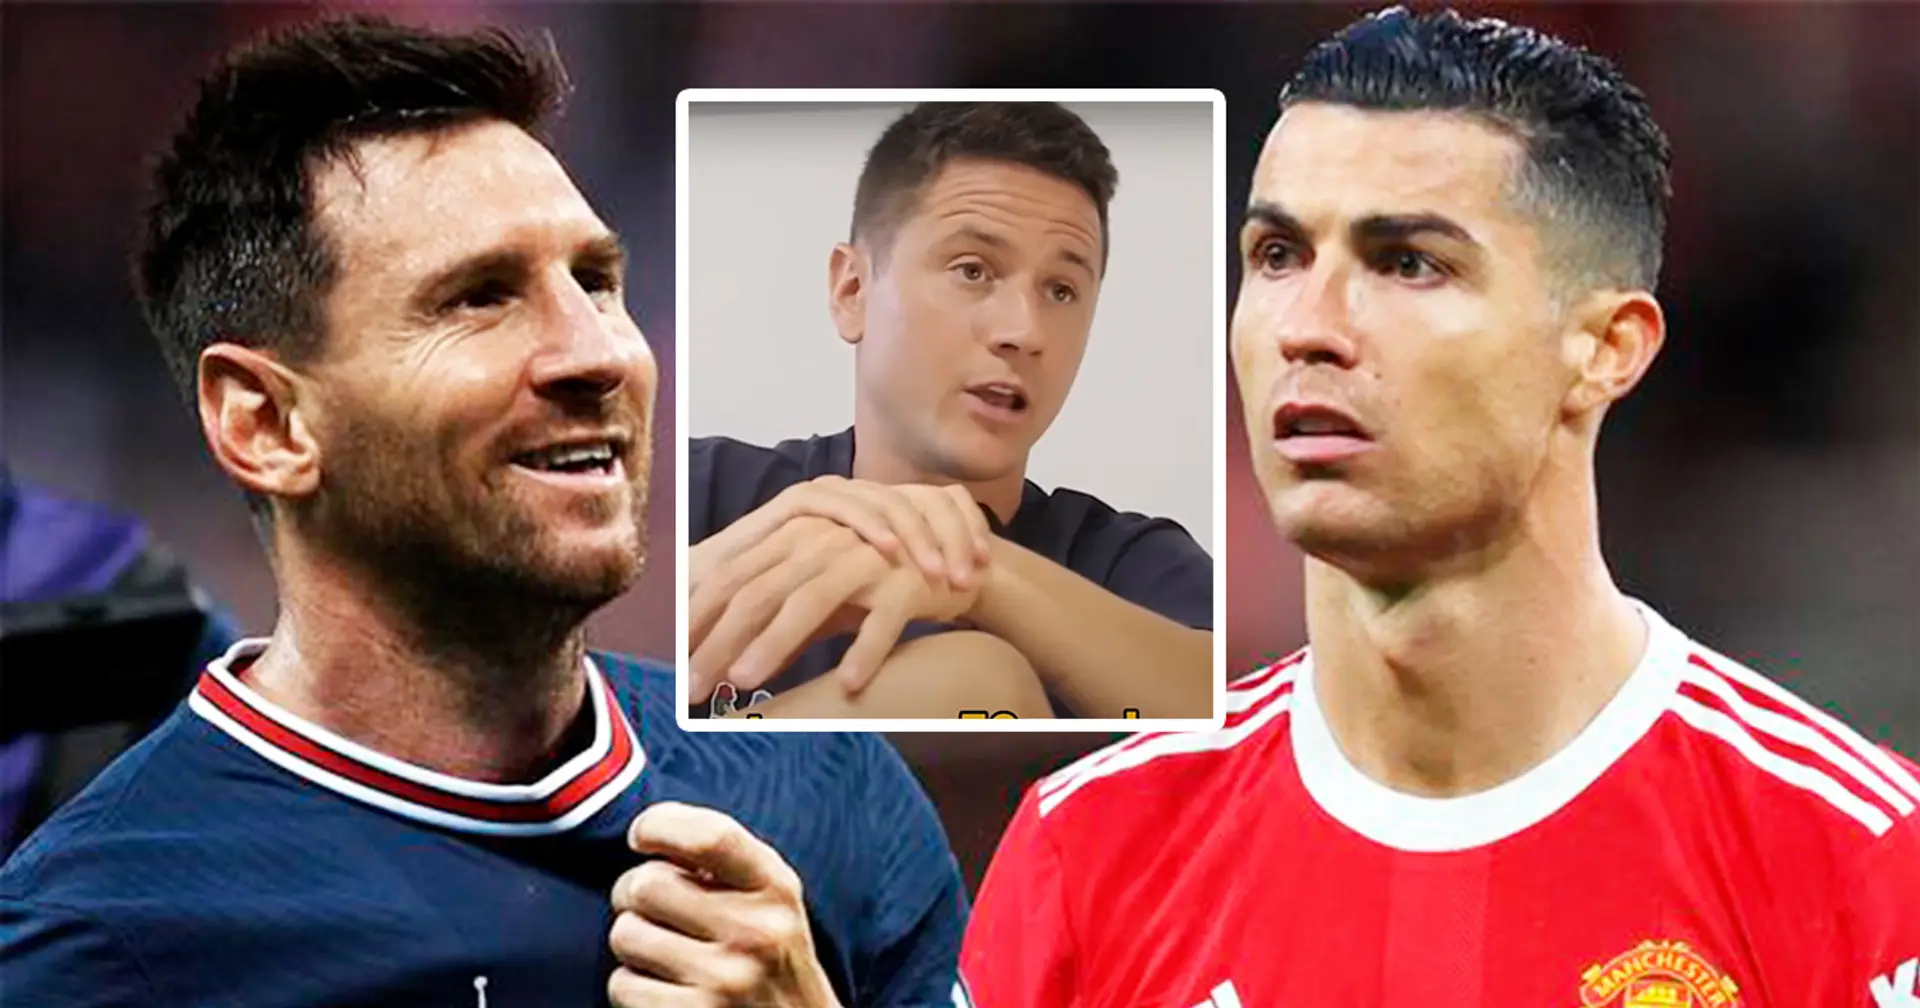 "Er ist der Beste aller Zeiten, ohne jede Diskussion": Ander Herrera beendet GOAT-Debatte zwischen Messi und Ronaldo